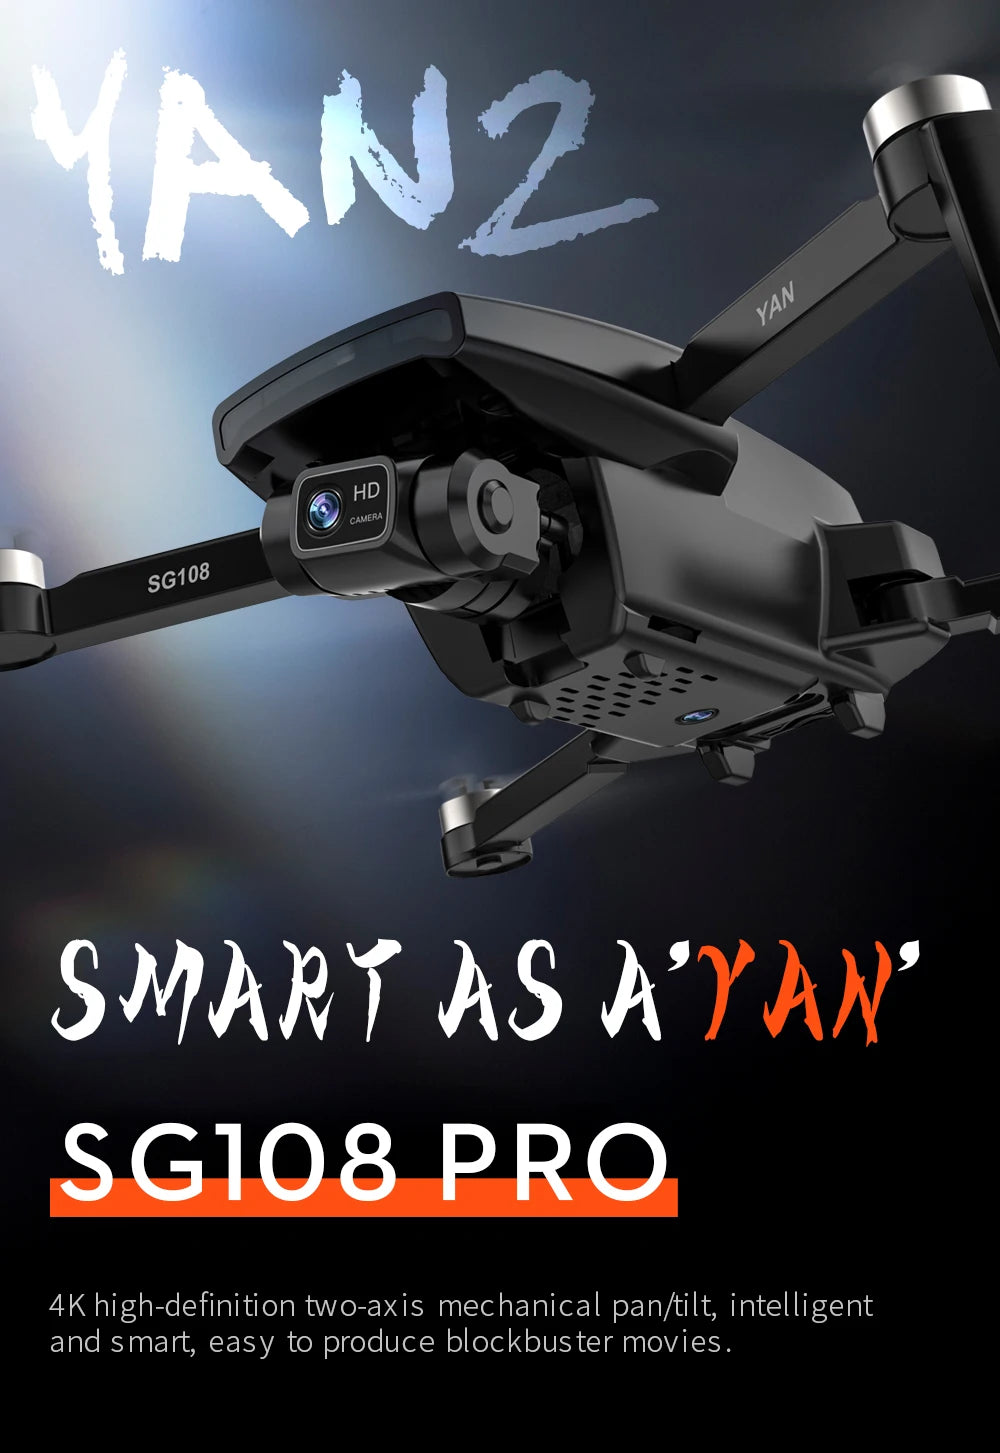 G108 Pro MAx Drone -